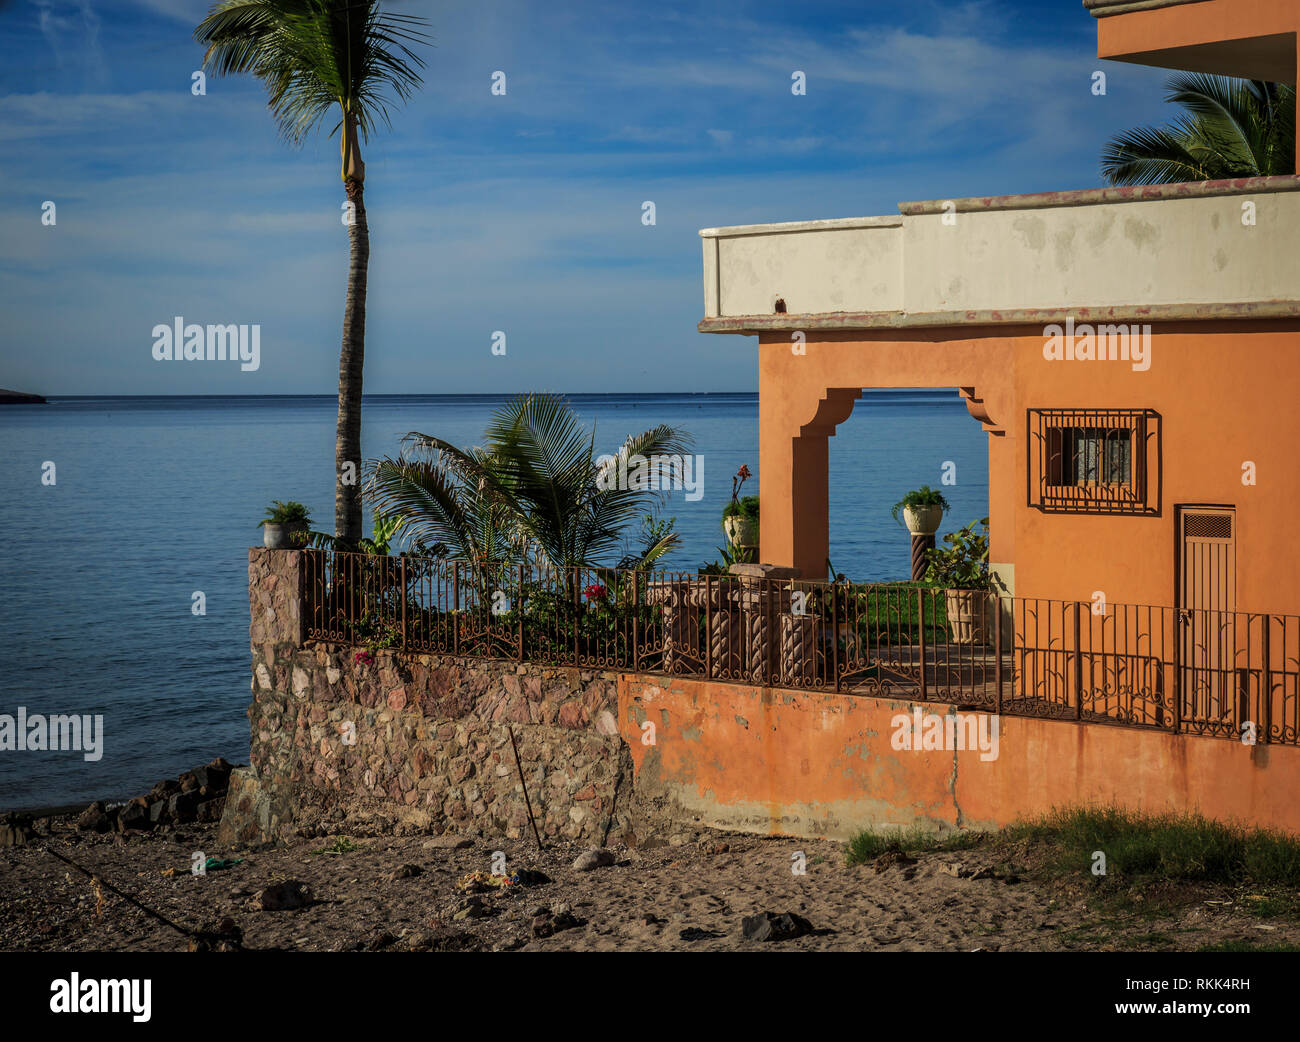 Arancio brillante stucco house si affaccia sulla penisola di Bahia, costa nord-occidentale del Messico. Foto Stock